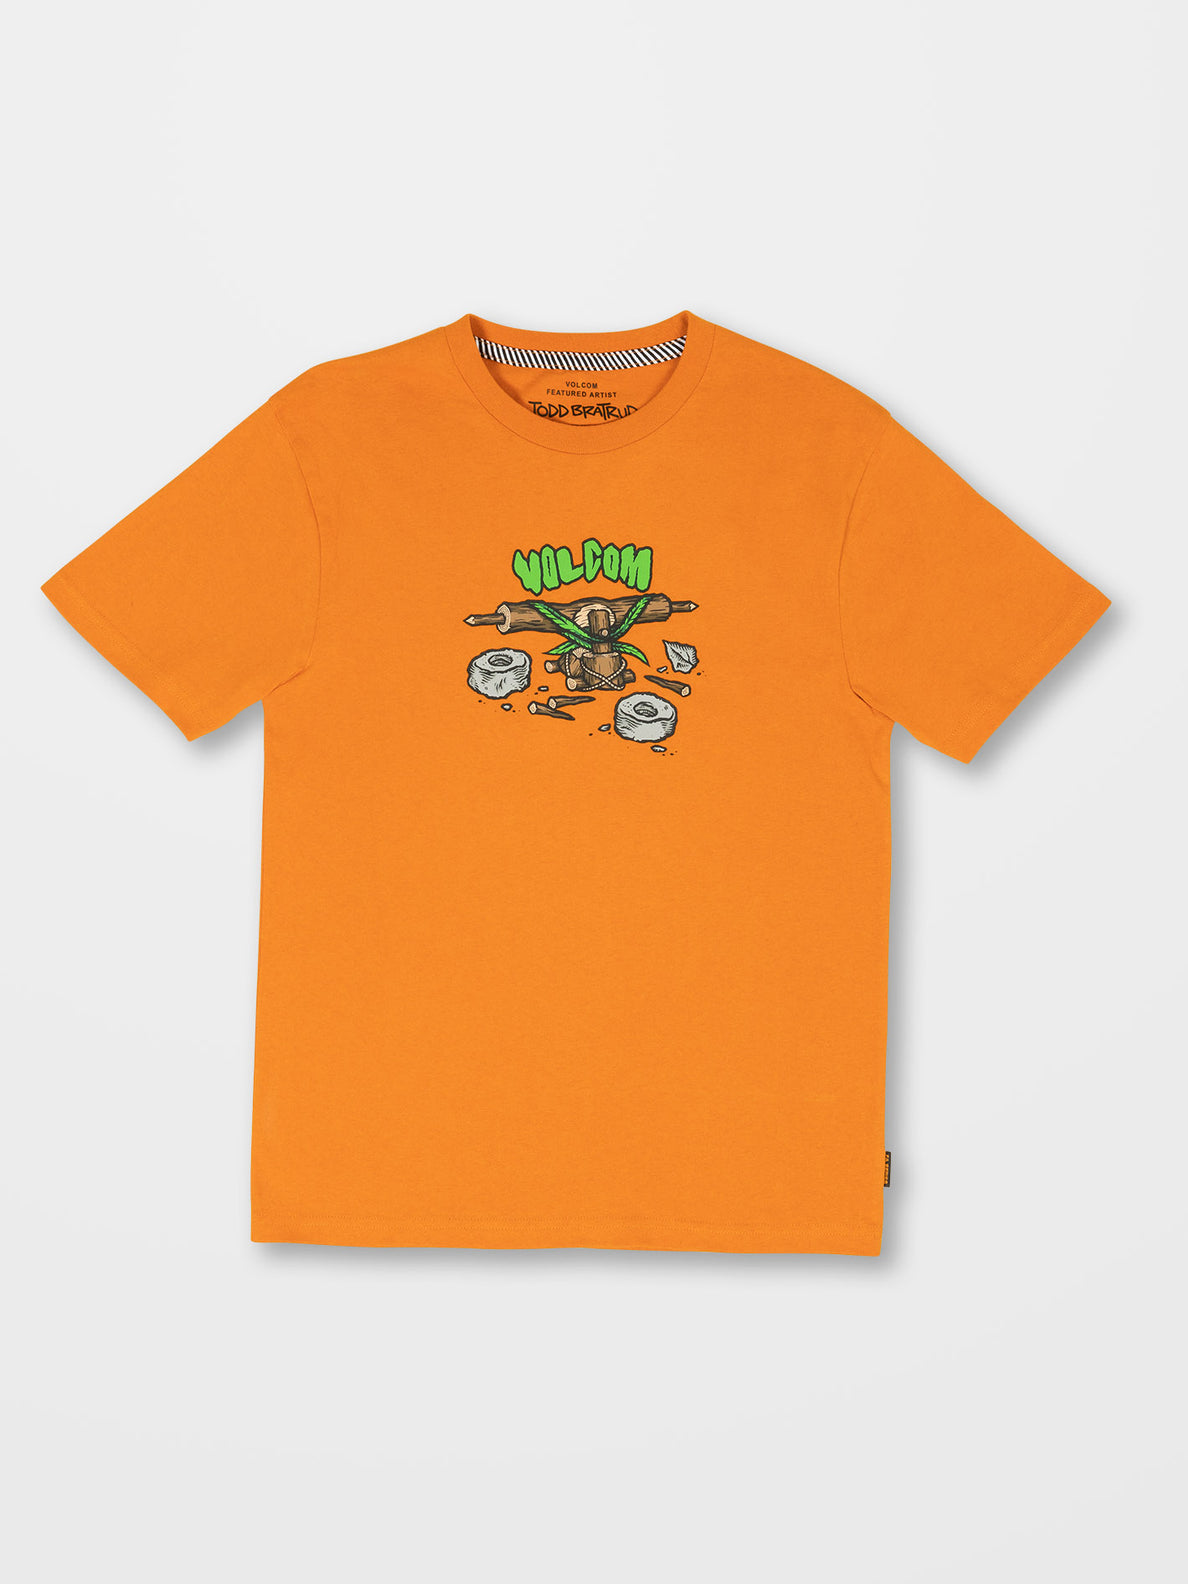 Camiseta niño Volcom Todd Bratrud - Saffron | Camisetas de niño | Volcom Shop | surfdevils.com